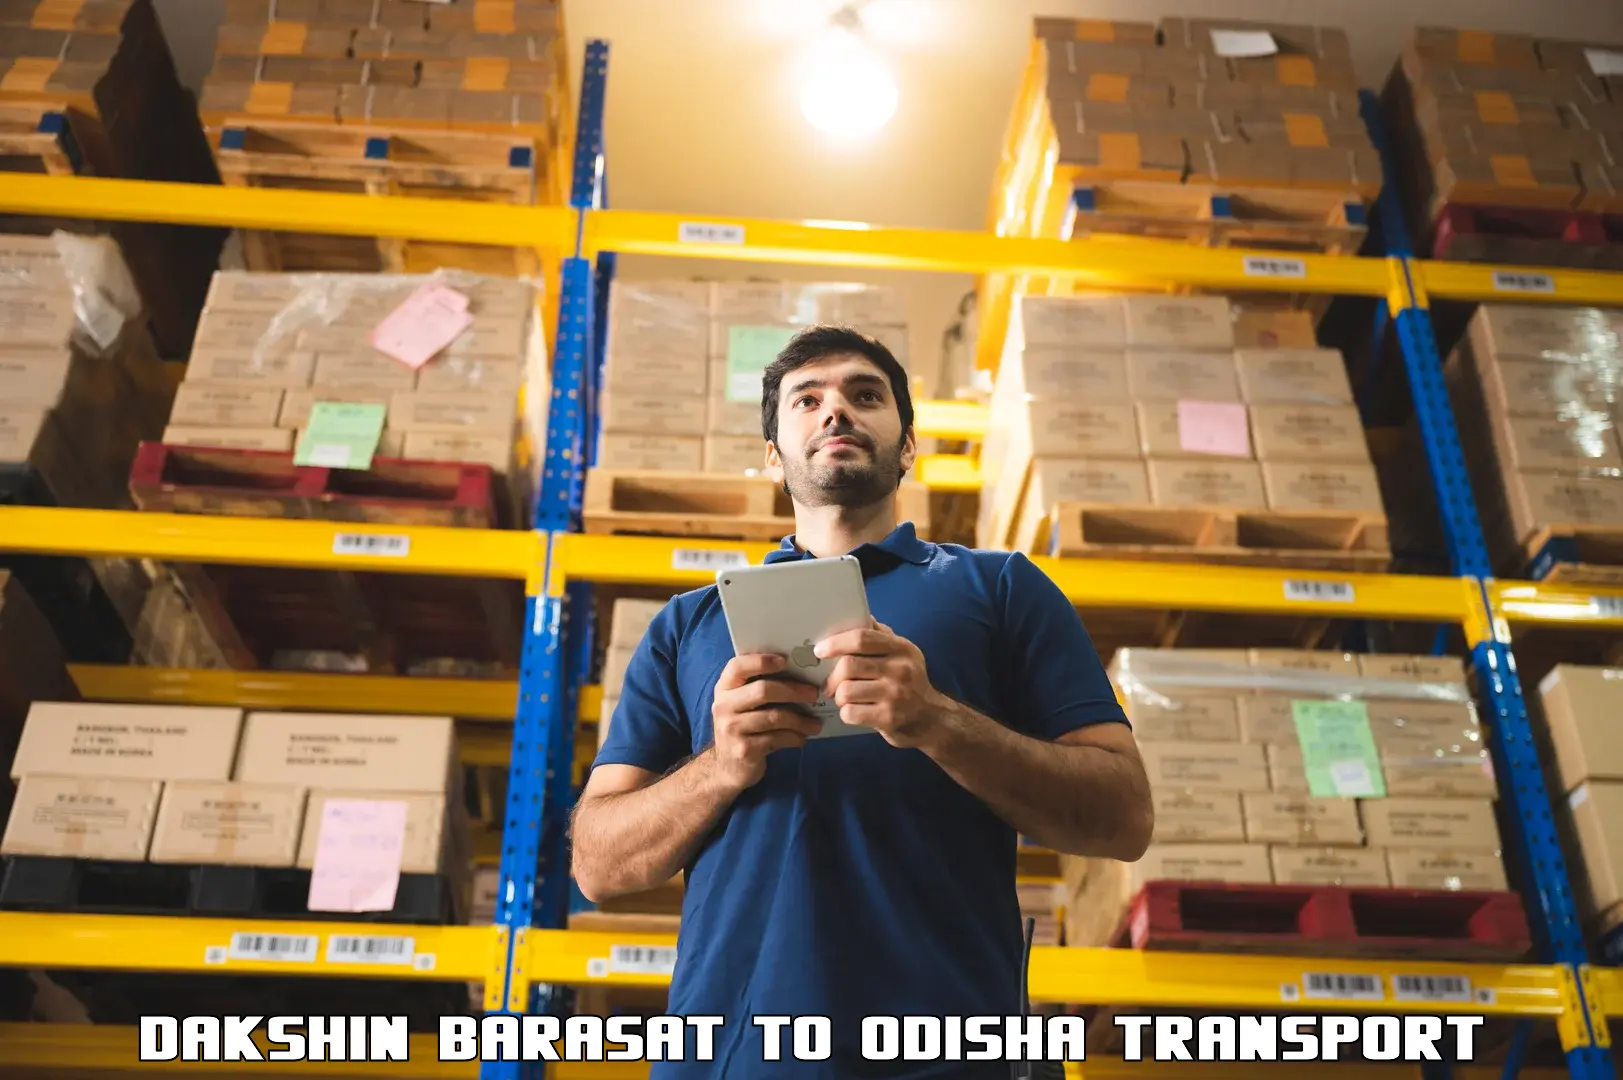 Road transport online services Dakshin Barasat to Bissam Cuttack